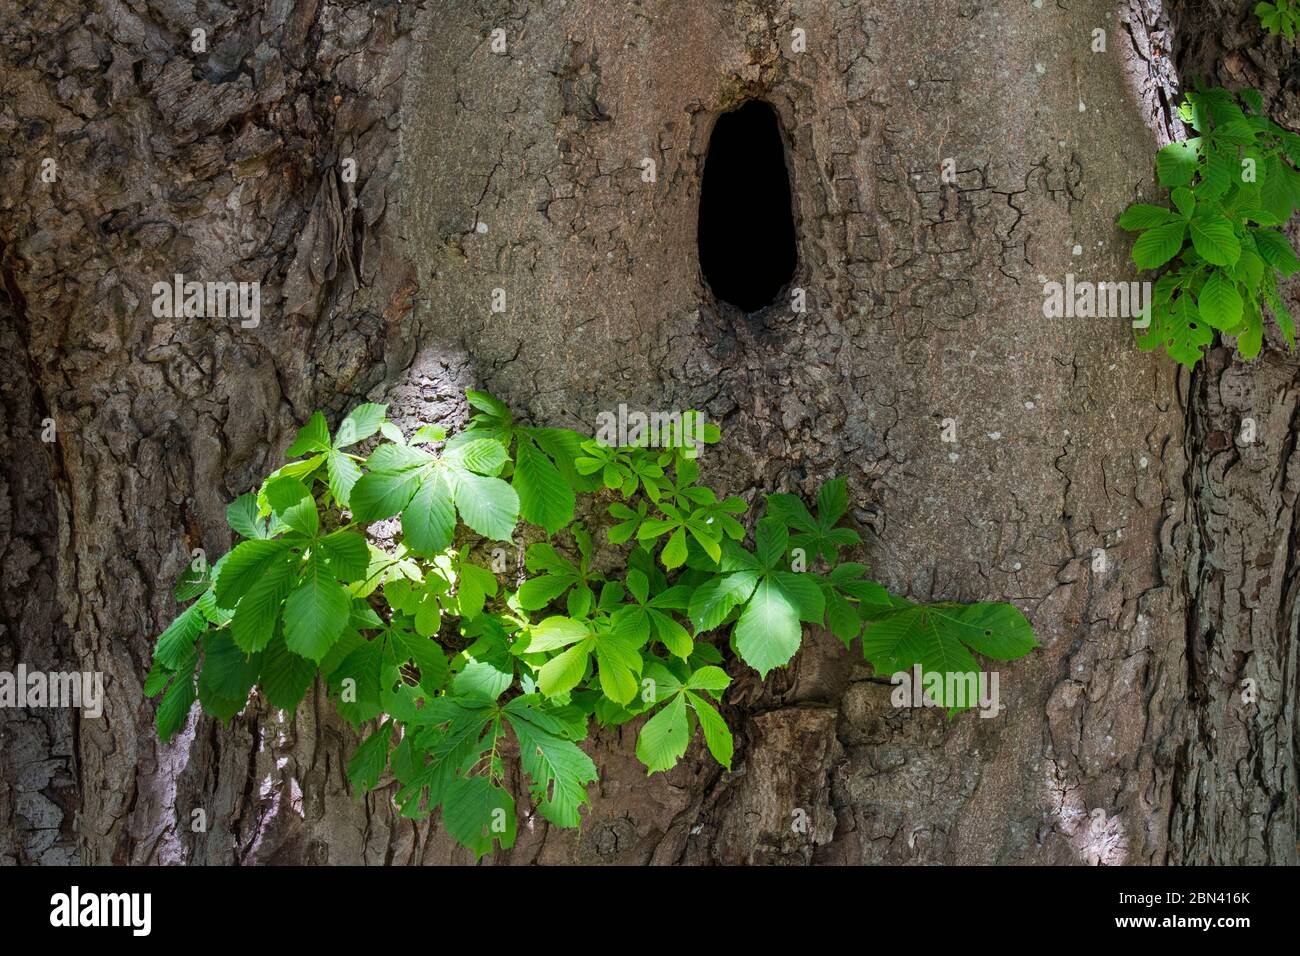 Cavité naturelle dans le tronc du châtaignier (Aesculus hippocastanum) offrant un site de nidification pour les oiseaux, les martres de pin et d'autres animaux Banque D'Images